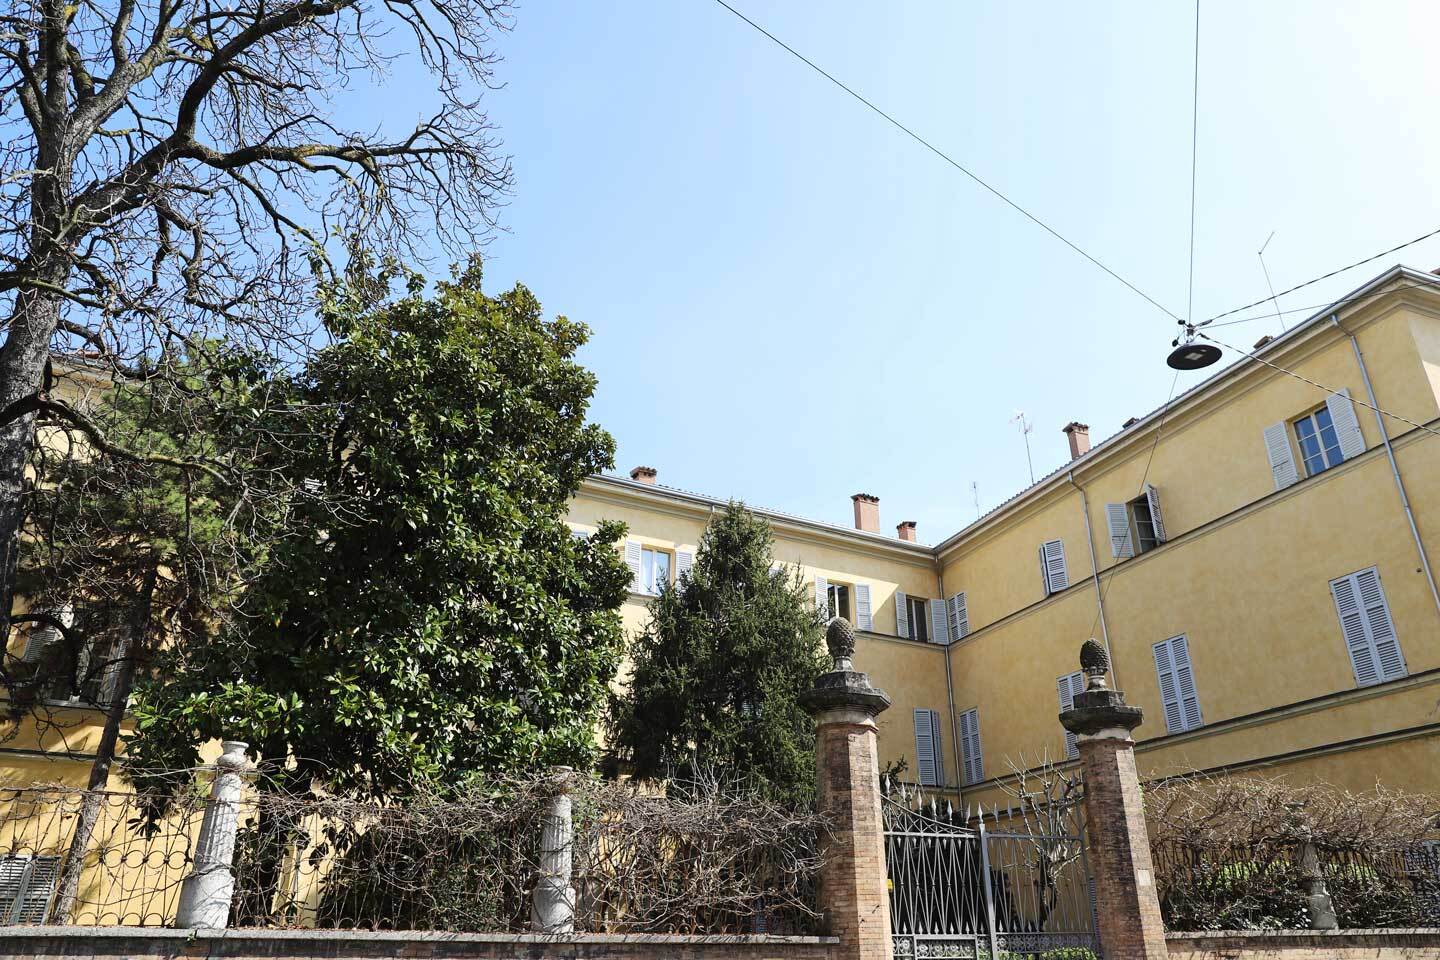 For sale apartment in city Parma Emilia-Romagna